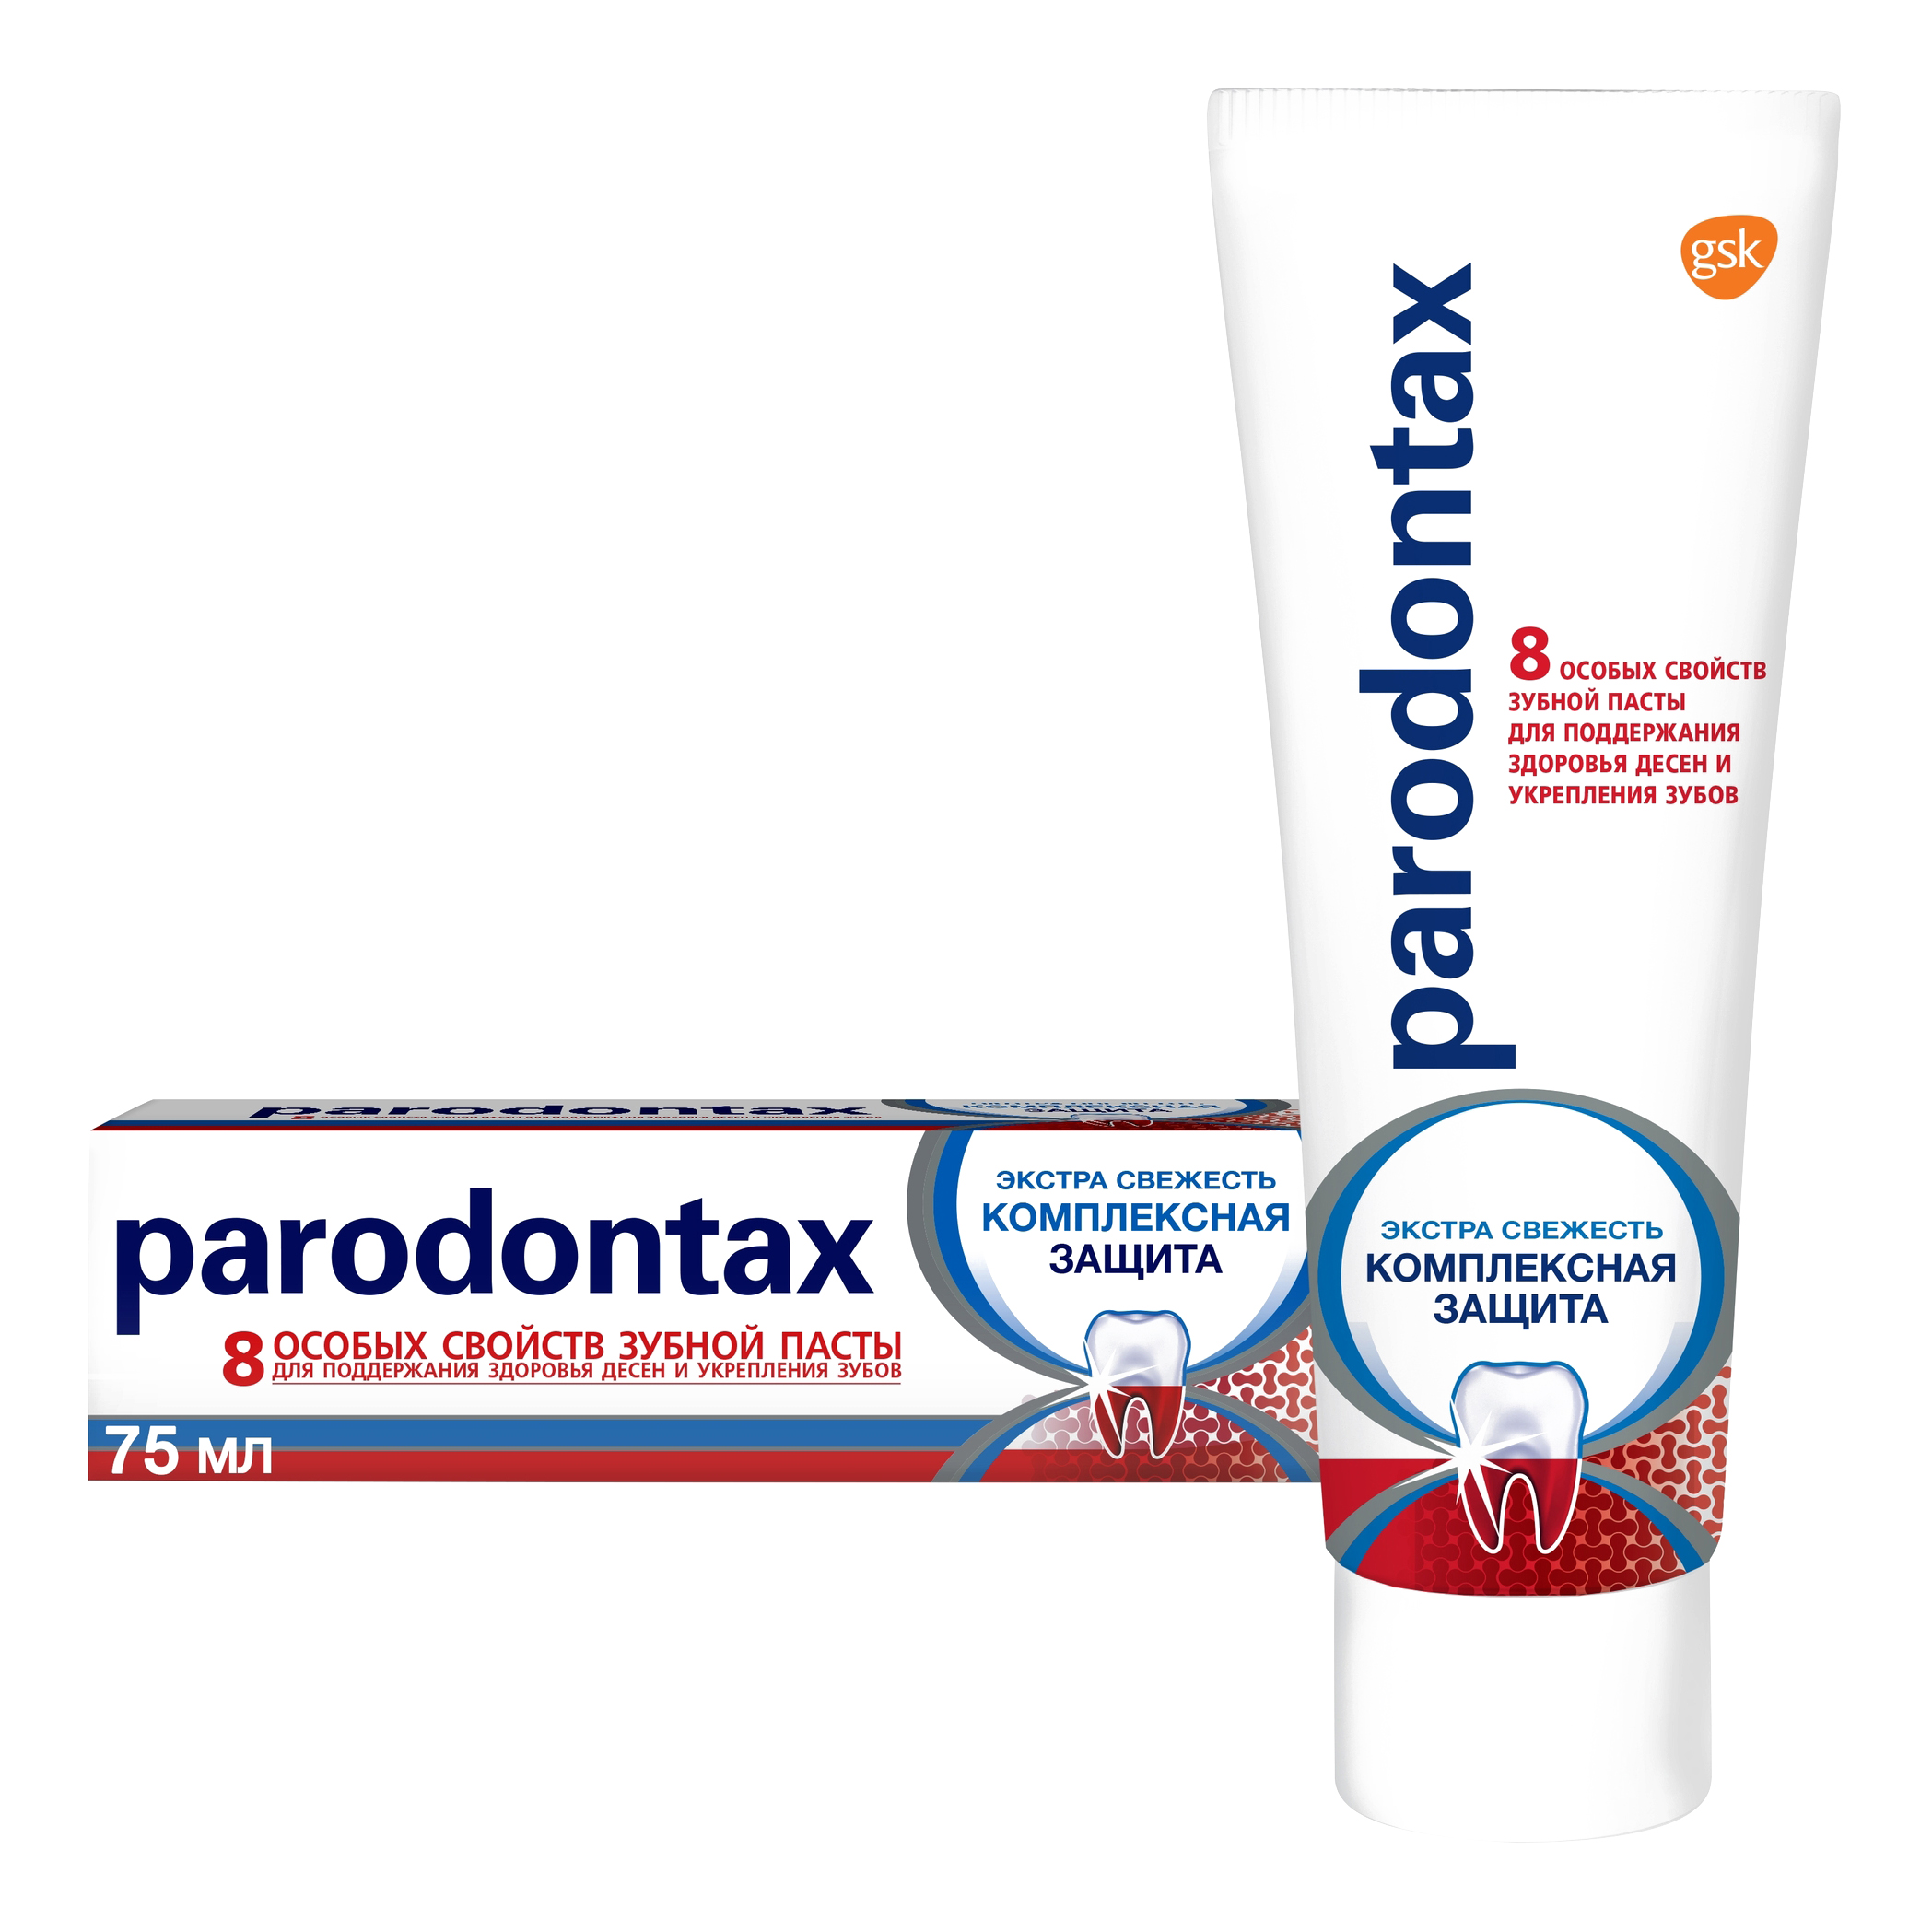 Зубная паста parodontax Комплексная Защита от воспаления и кровоточивости десен с фтором, 75 мл пародонтакс комплексная защита паста зубная 75мл